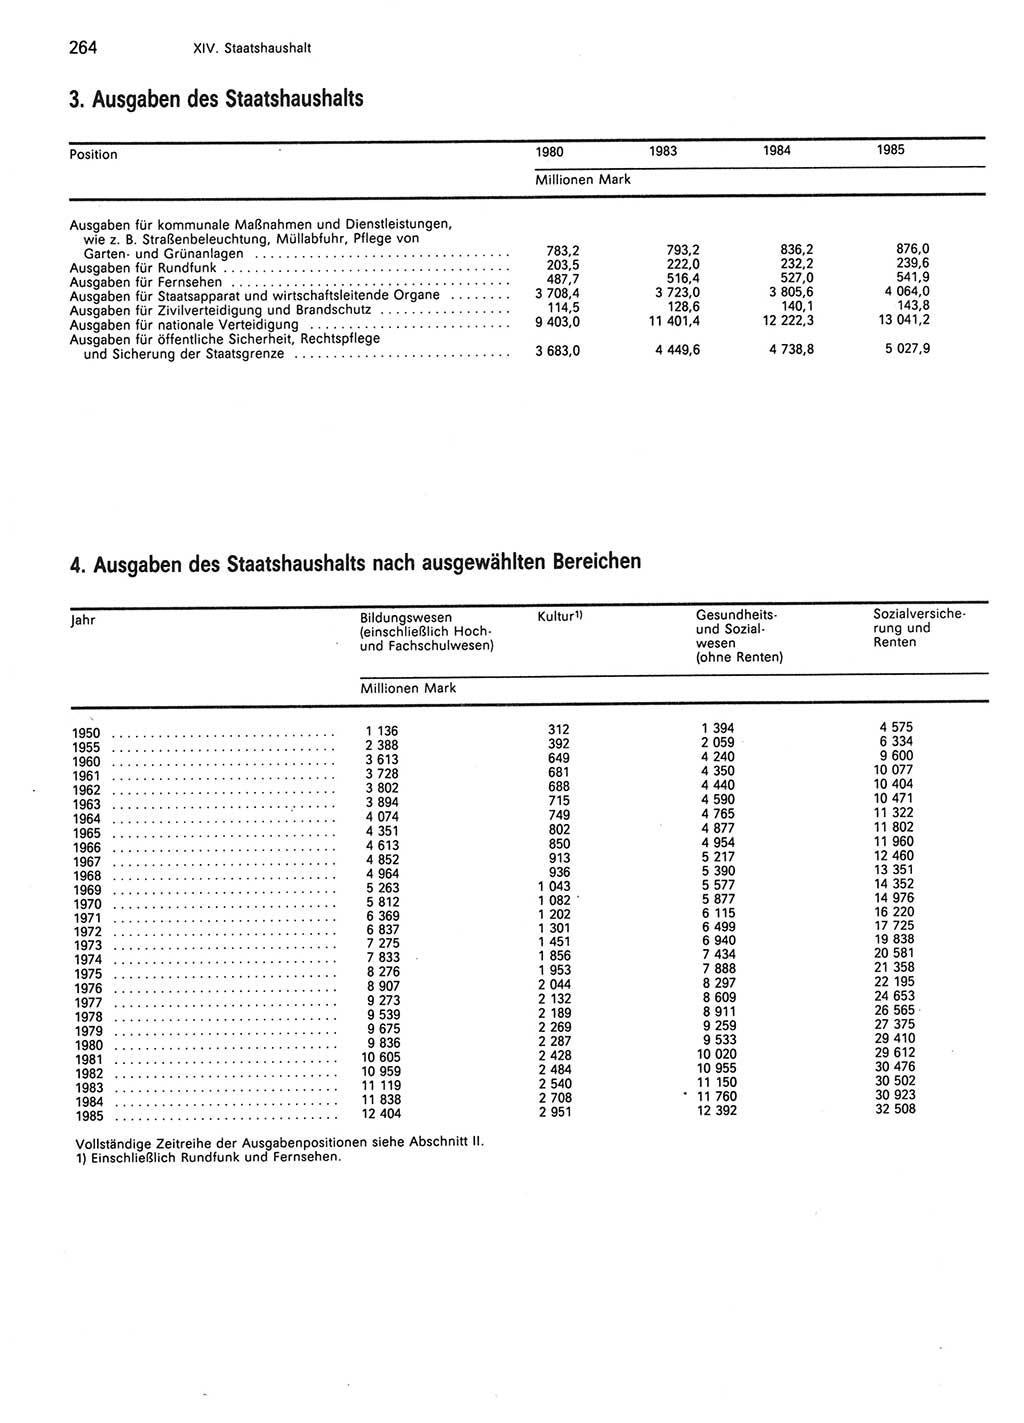 Statistisches Jahrbuch der Deutschen Demokratischen Republik (DDR) 1986, Seite 264 (Stat. Jb. DDR 1986, S. 264)